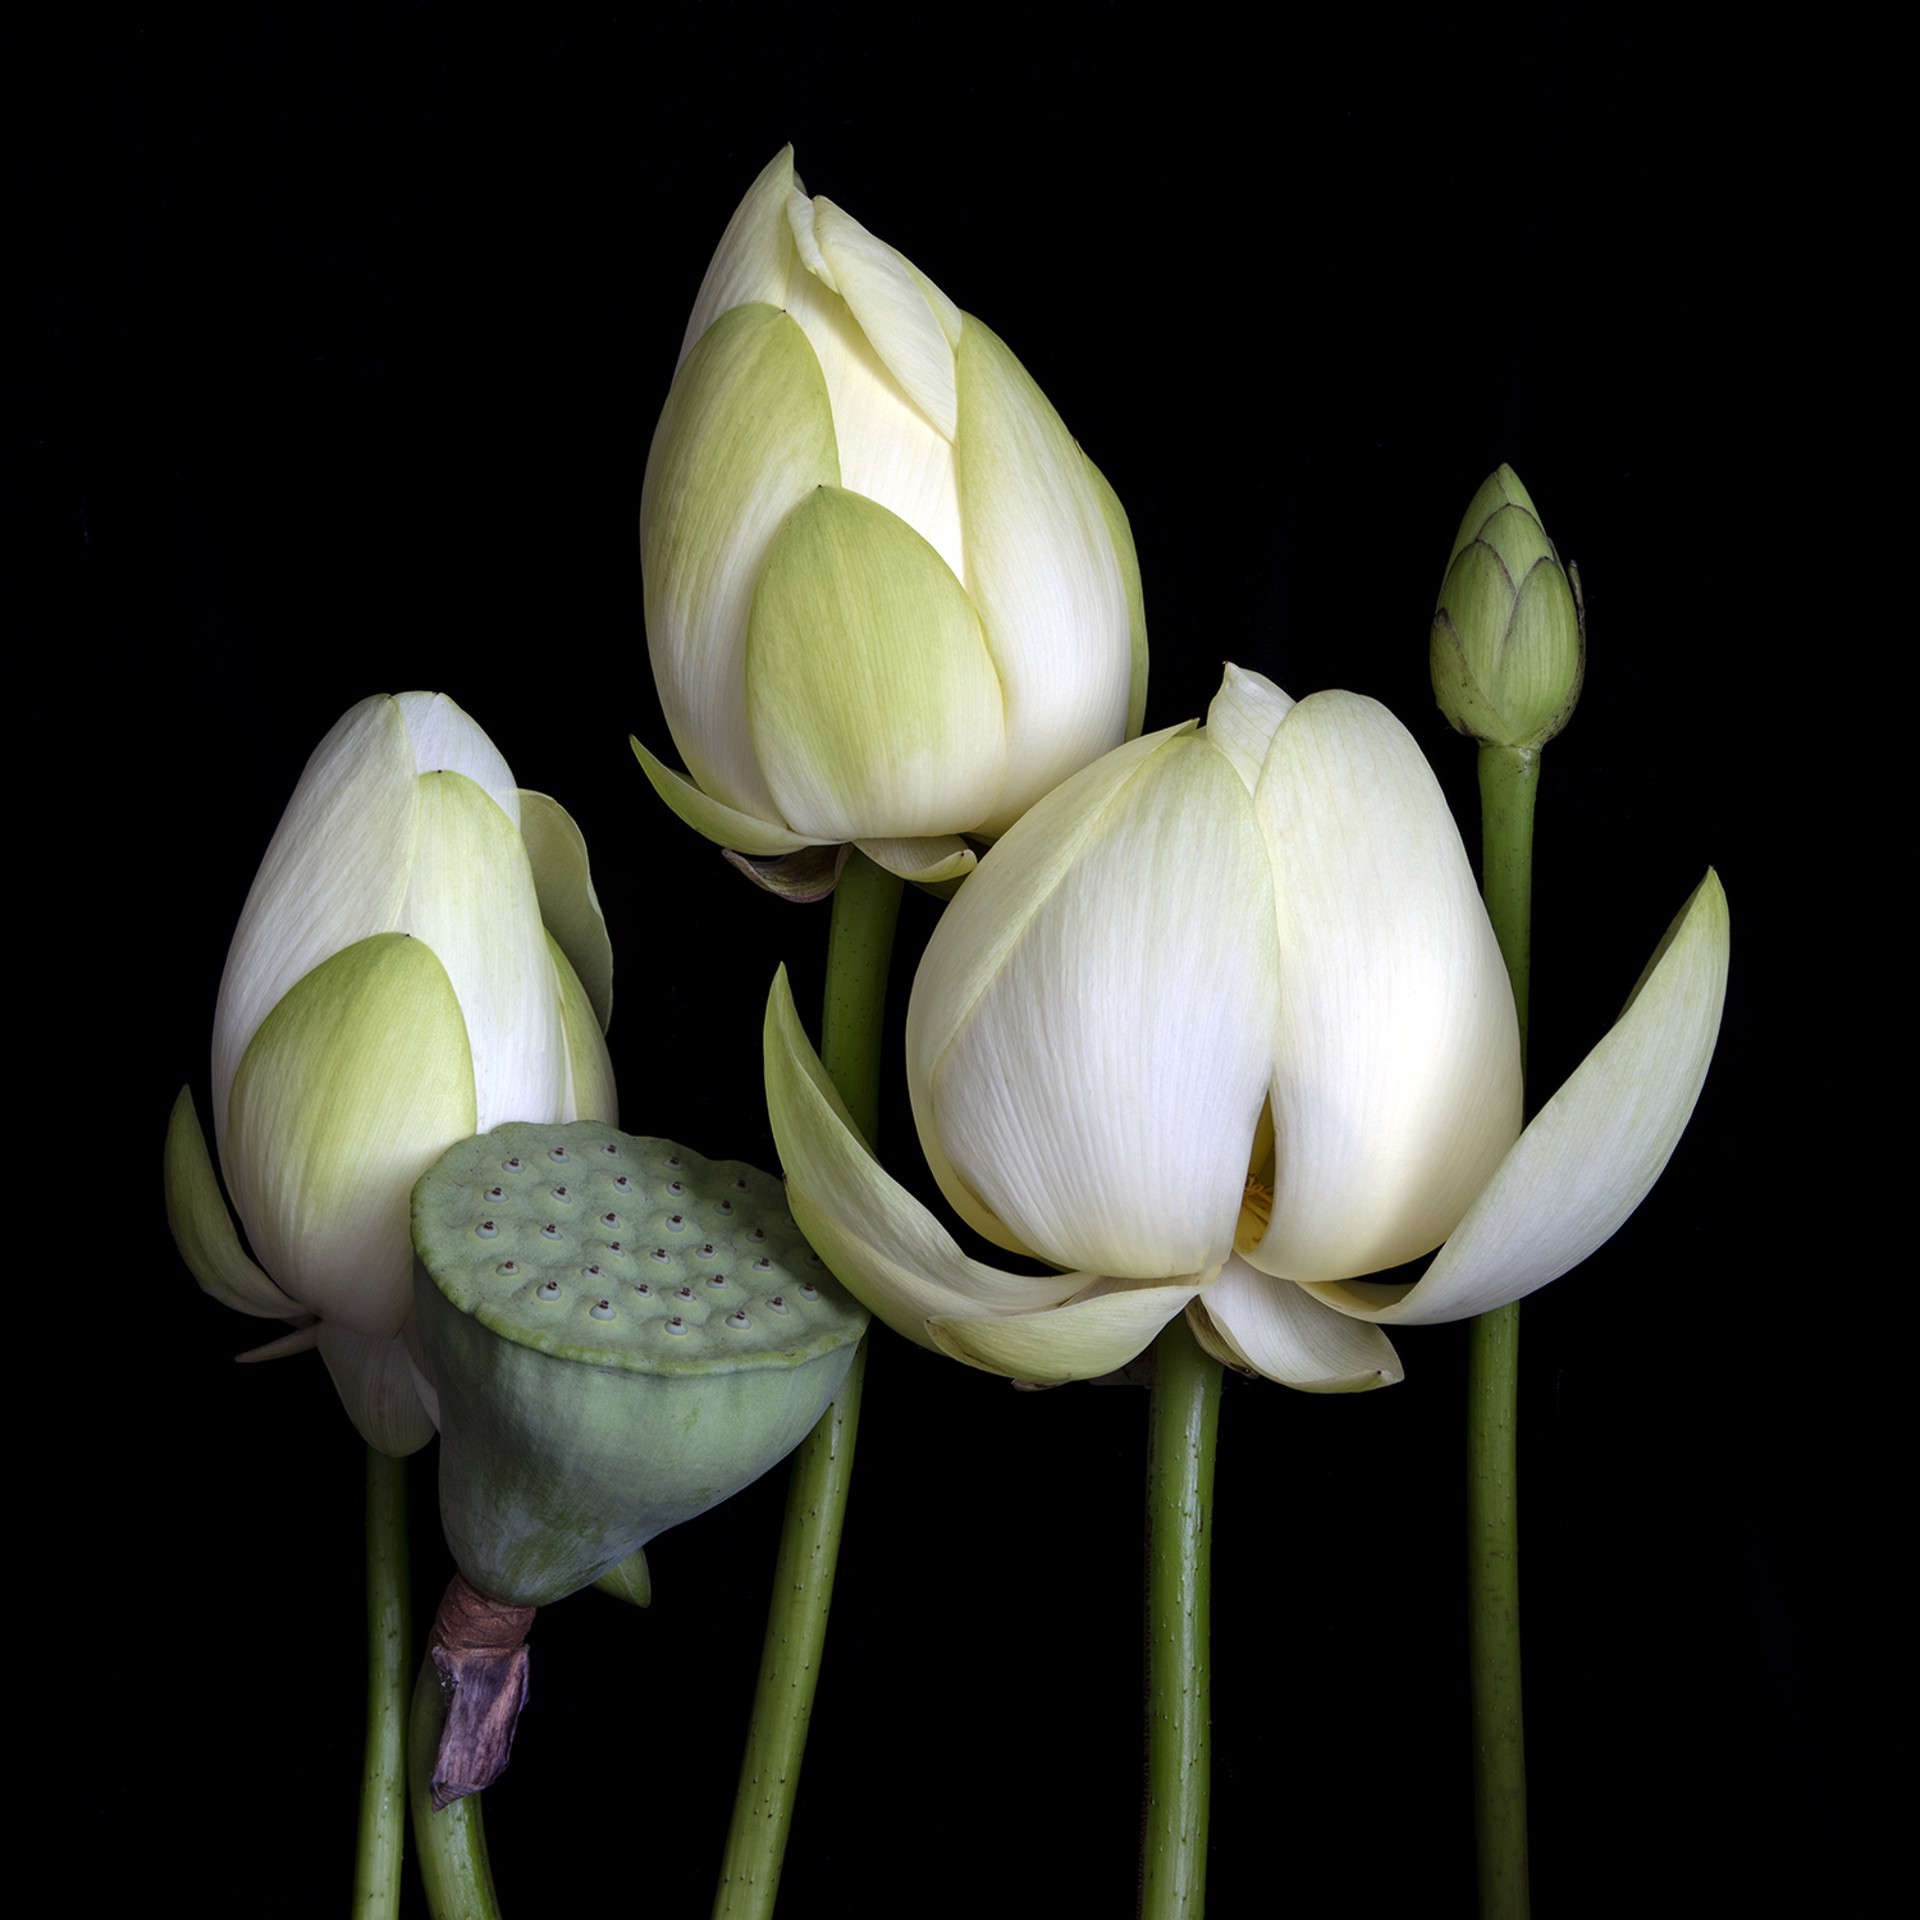 American lotus (Nelumbo lutea) 9947 by Molly Wood